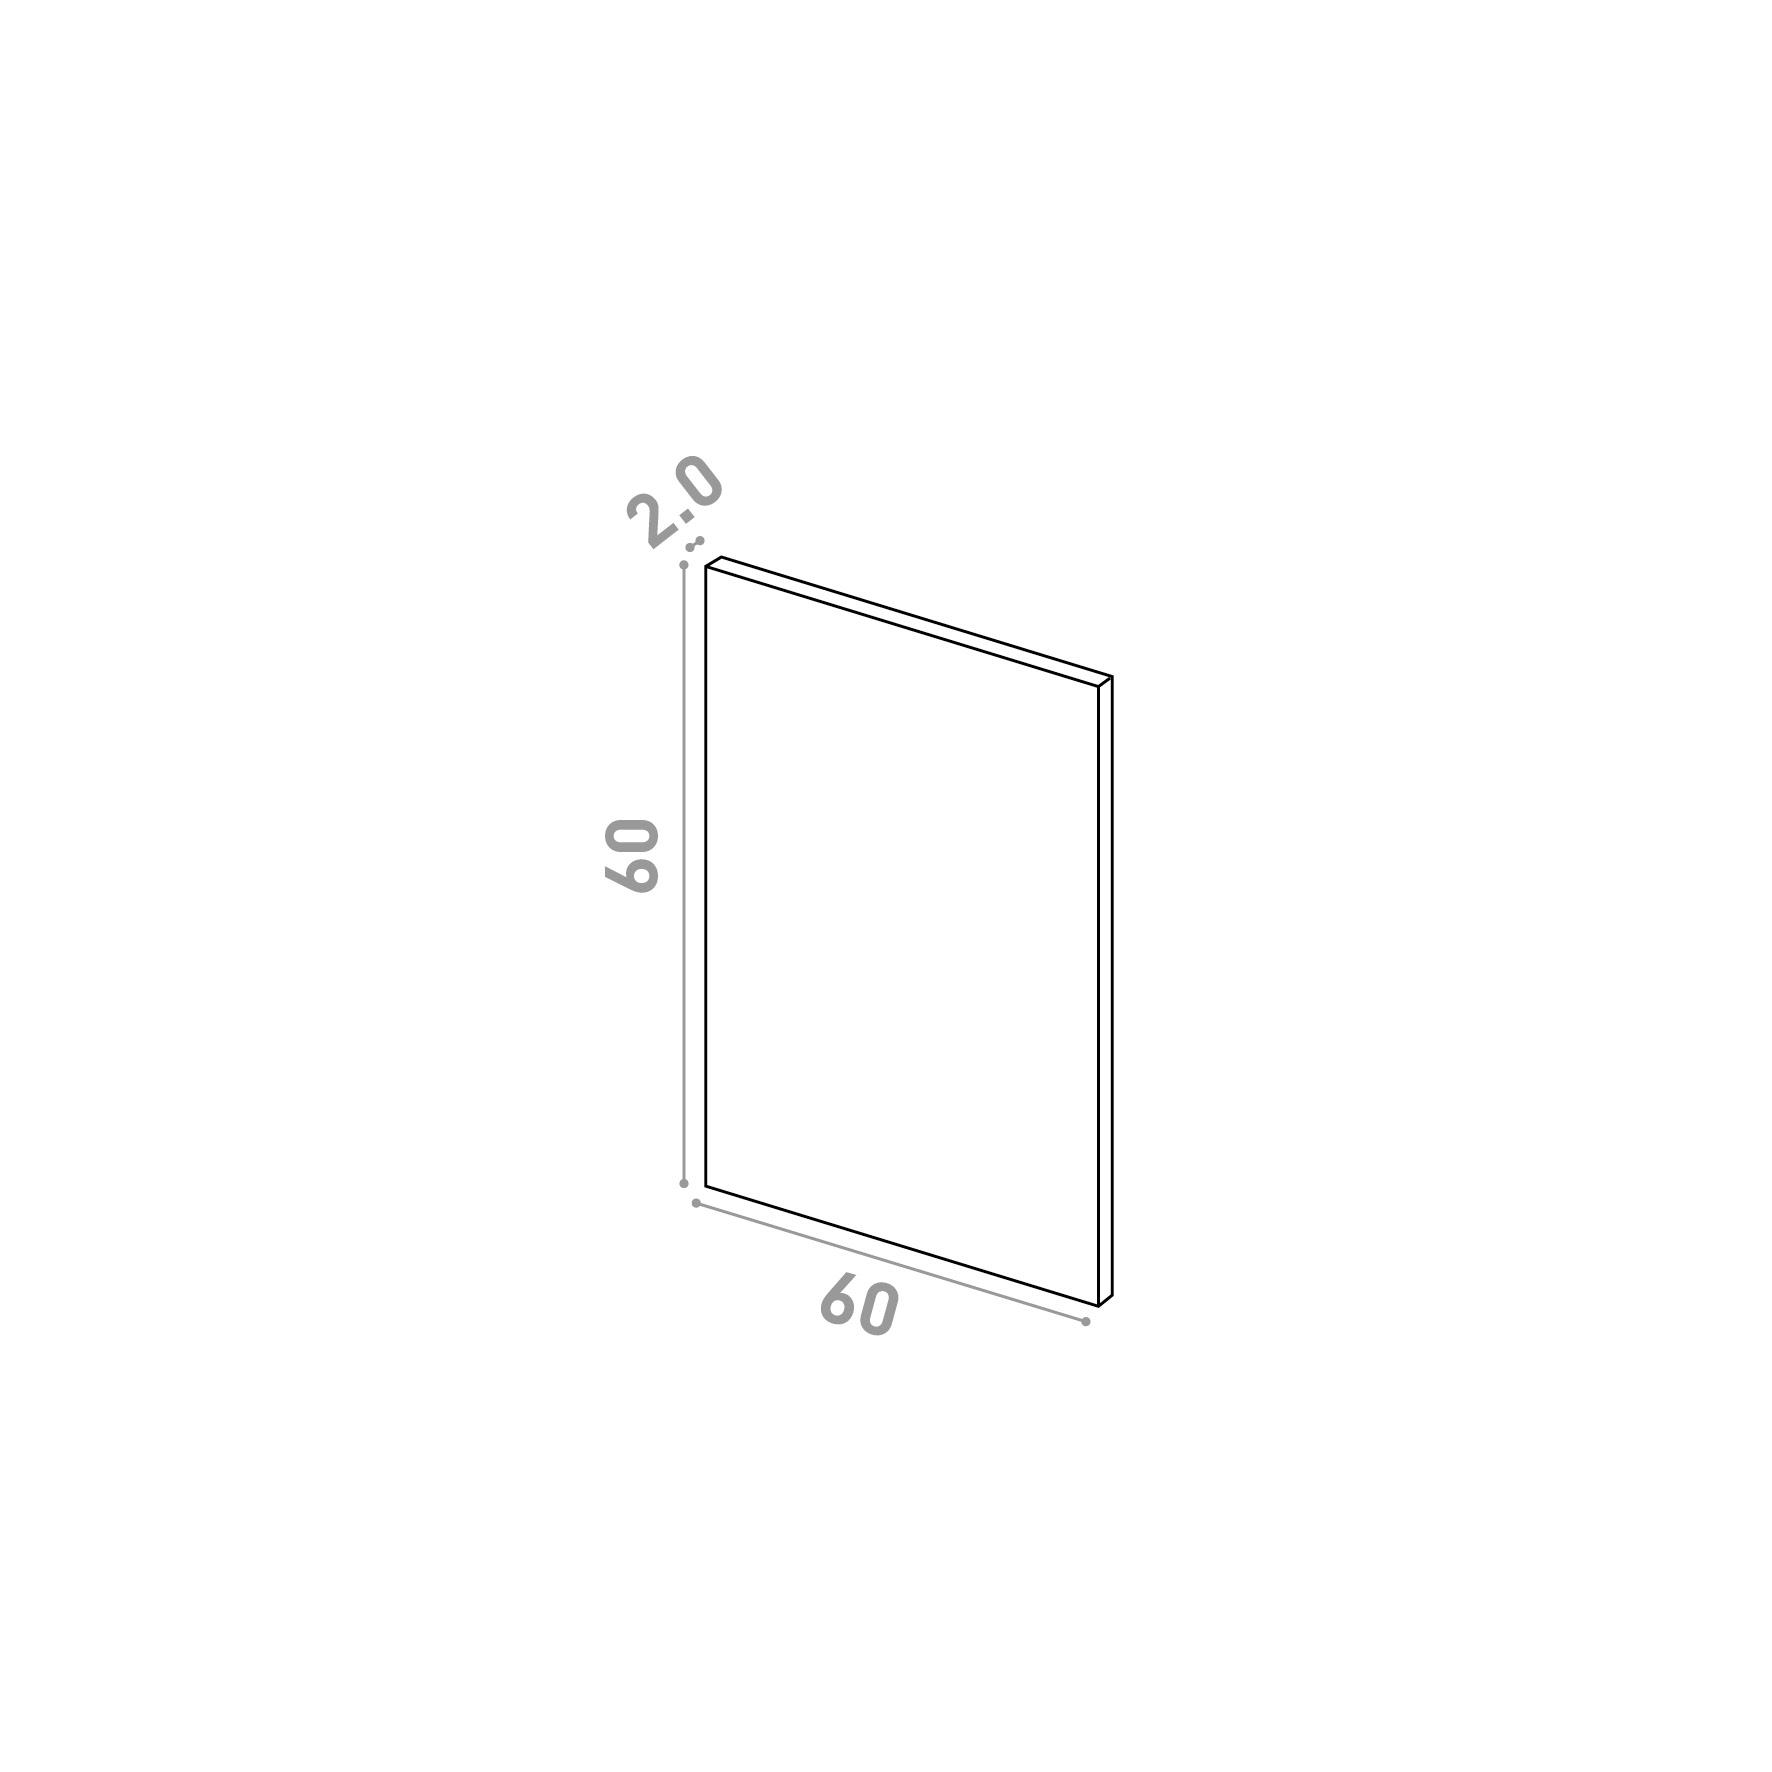 Door 60x60cm | Straight design | Matte lacquered